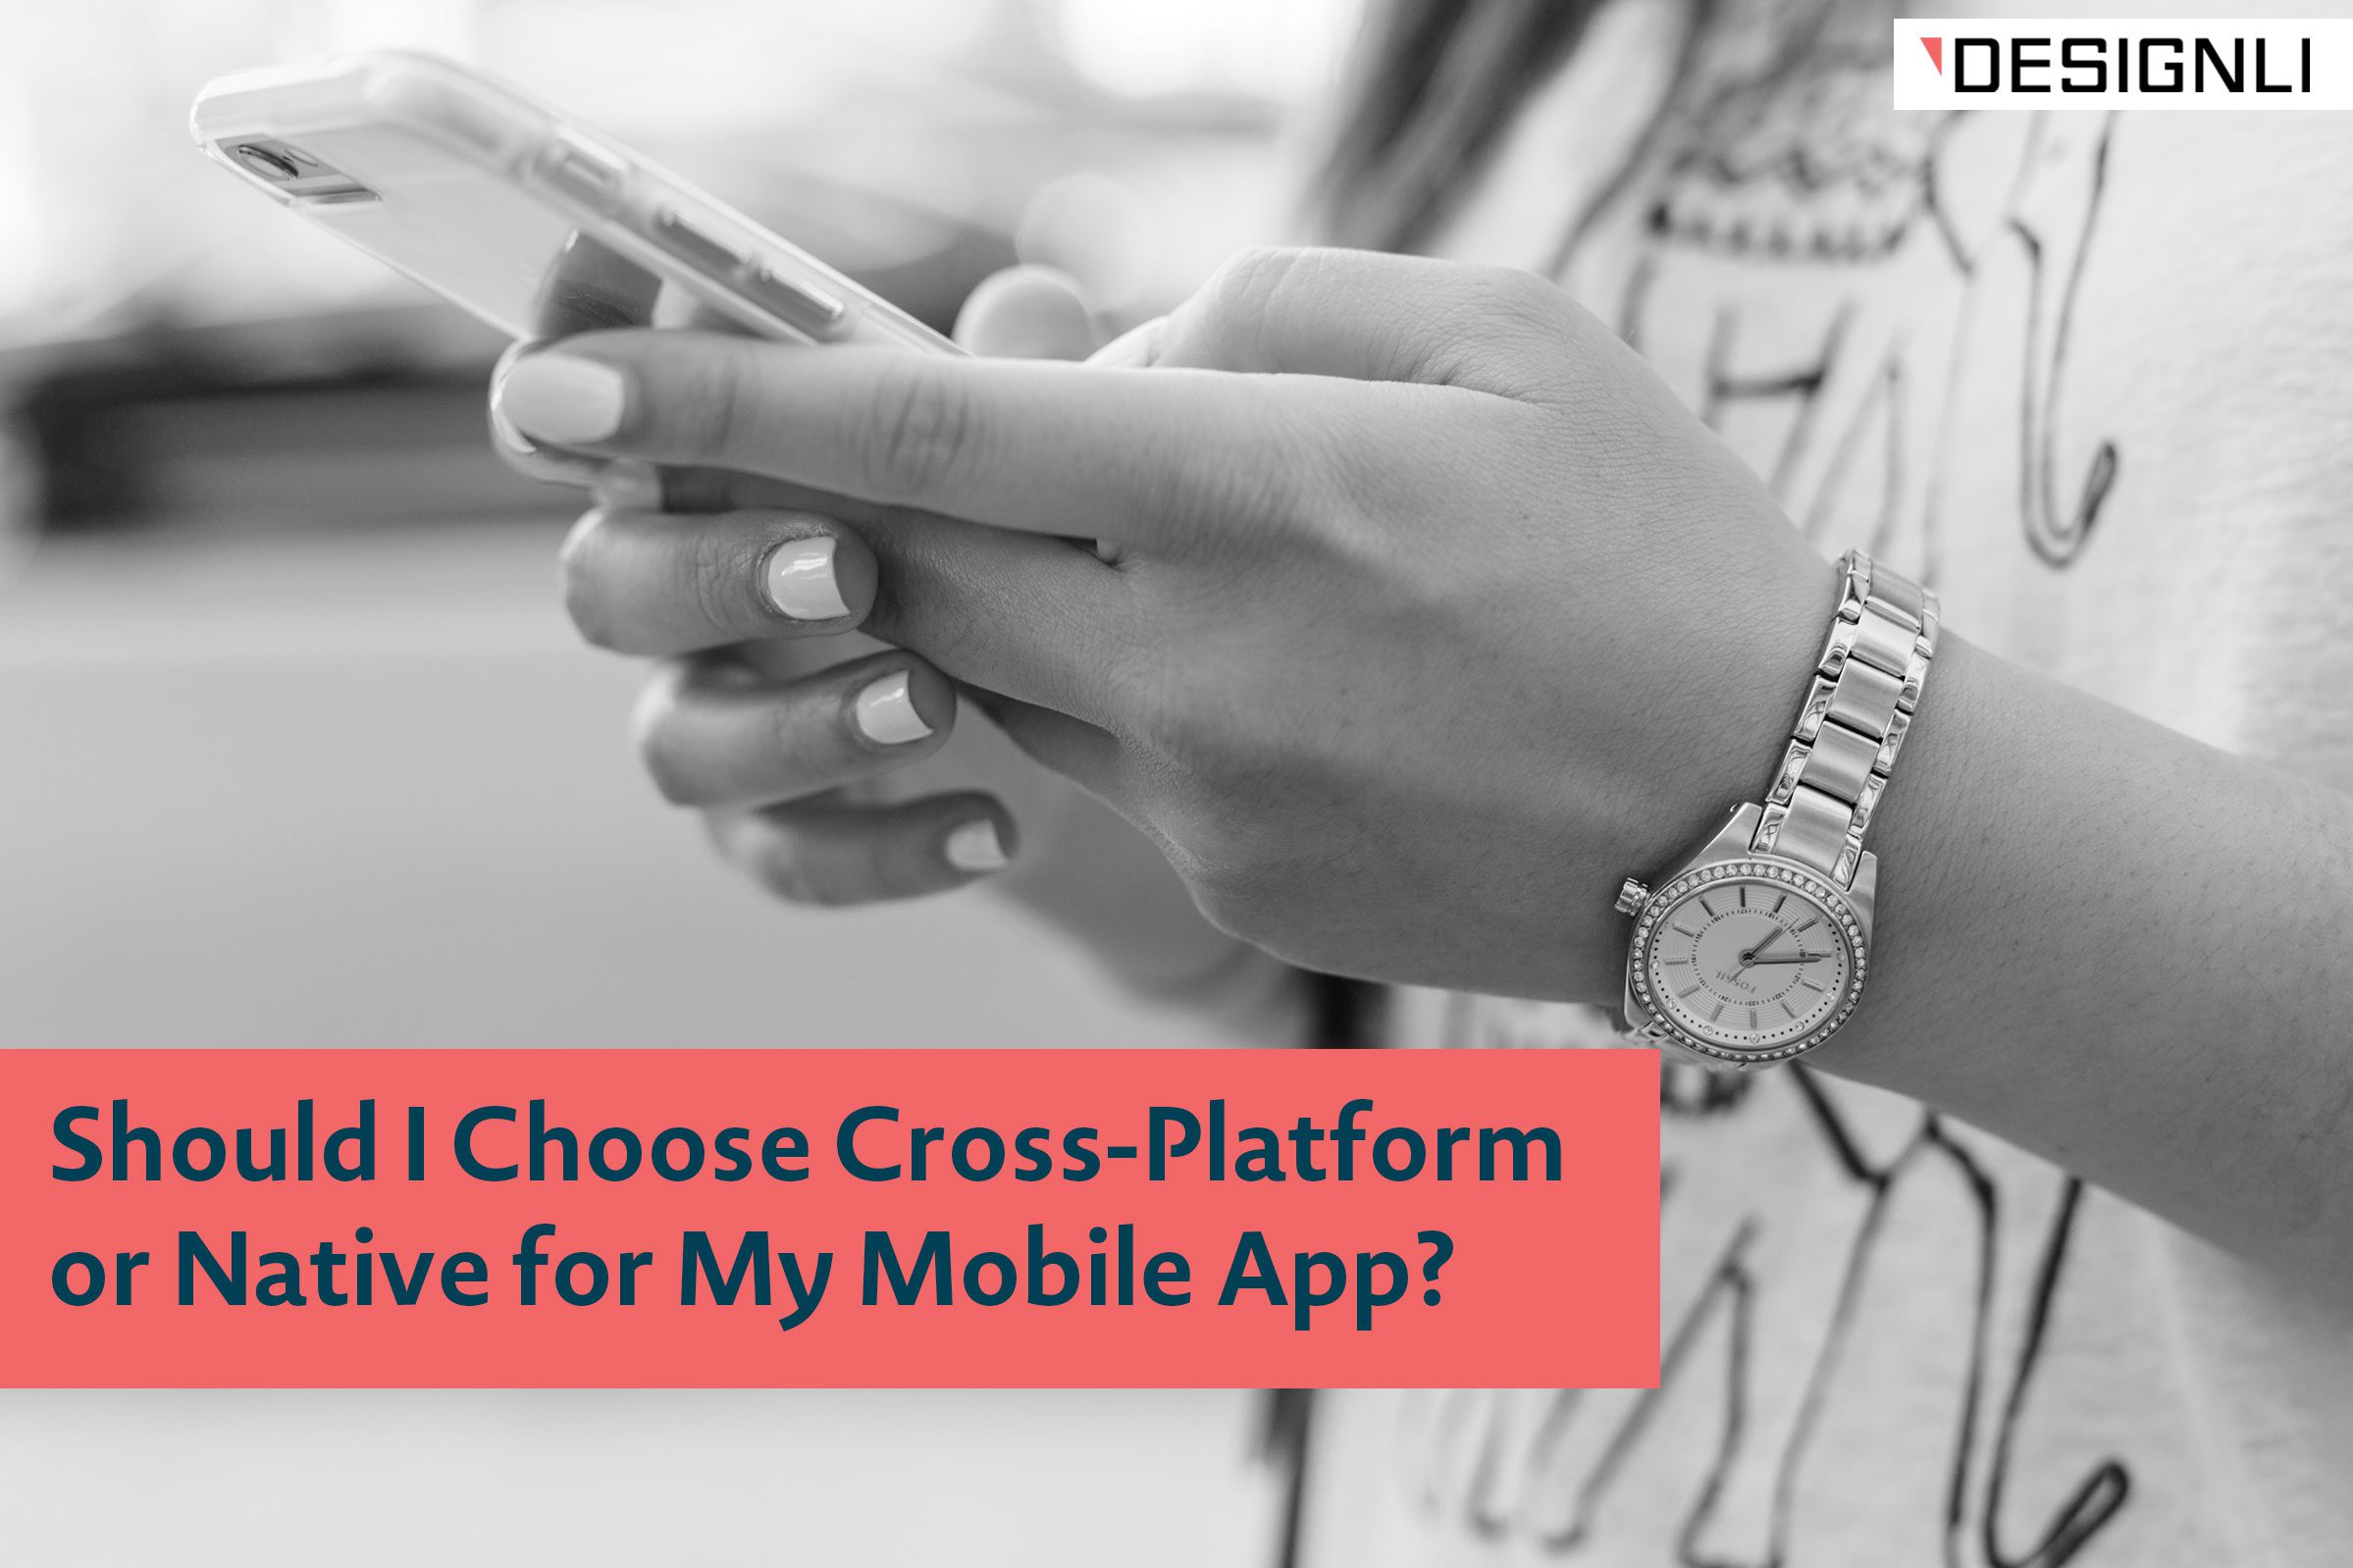 Should I Choose Cross-Platform or Native for My Mobile App?